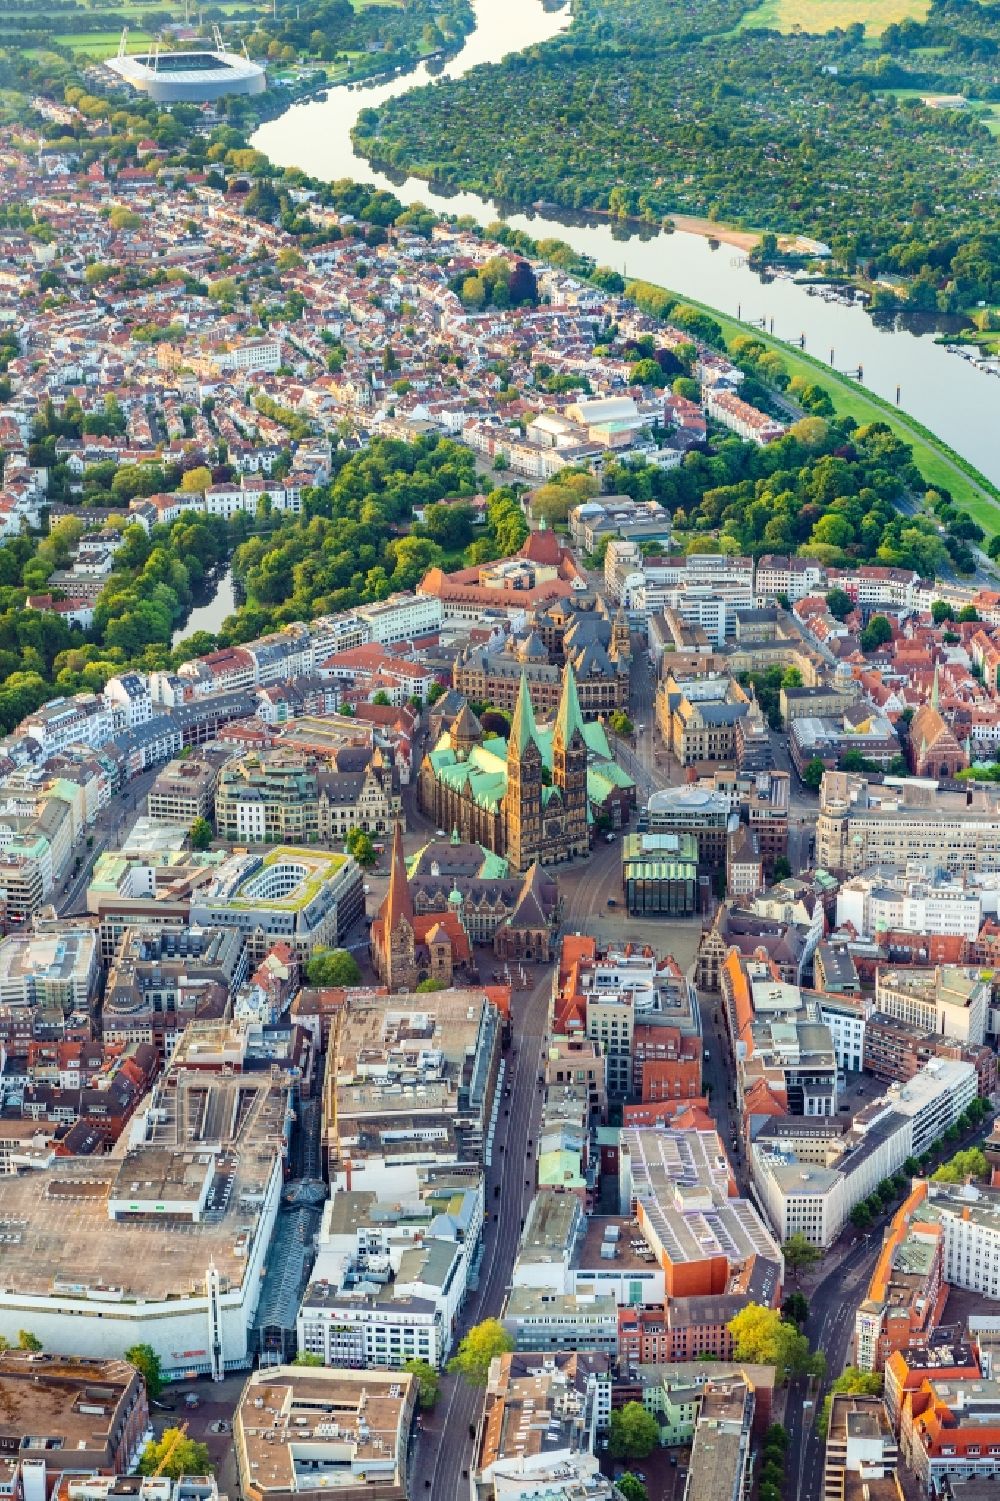 Luftbild Bremen - Stadtteilansicht der Altstadt im Morgenlicht der Hansestadt am Ufer der Weser in Bremen